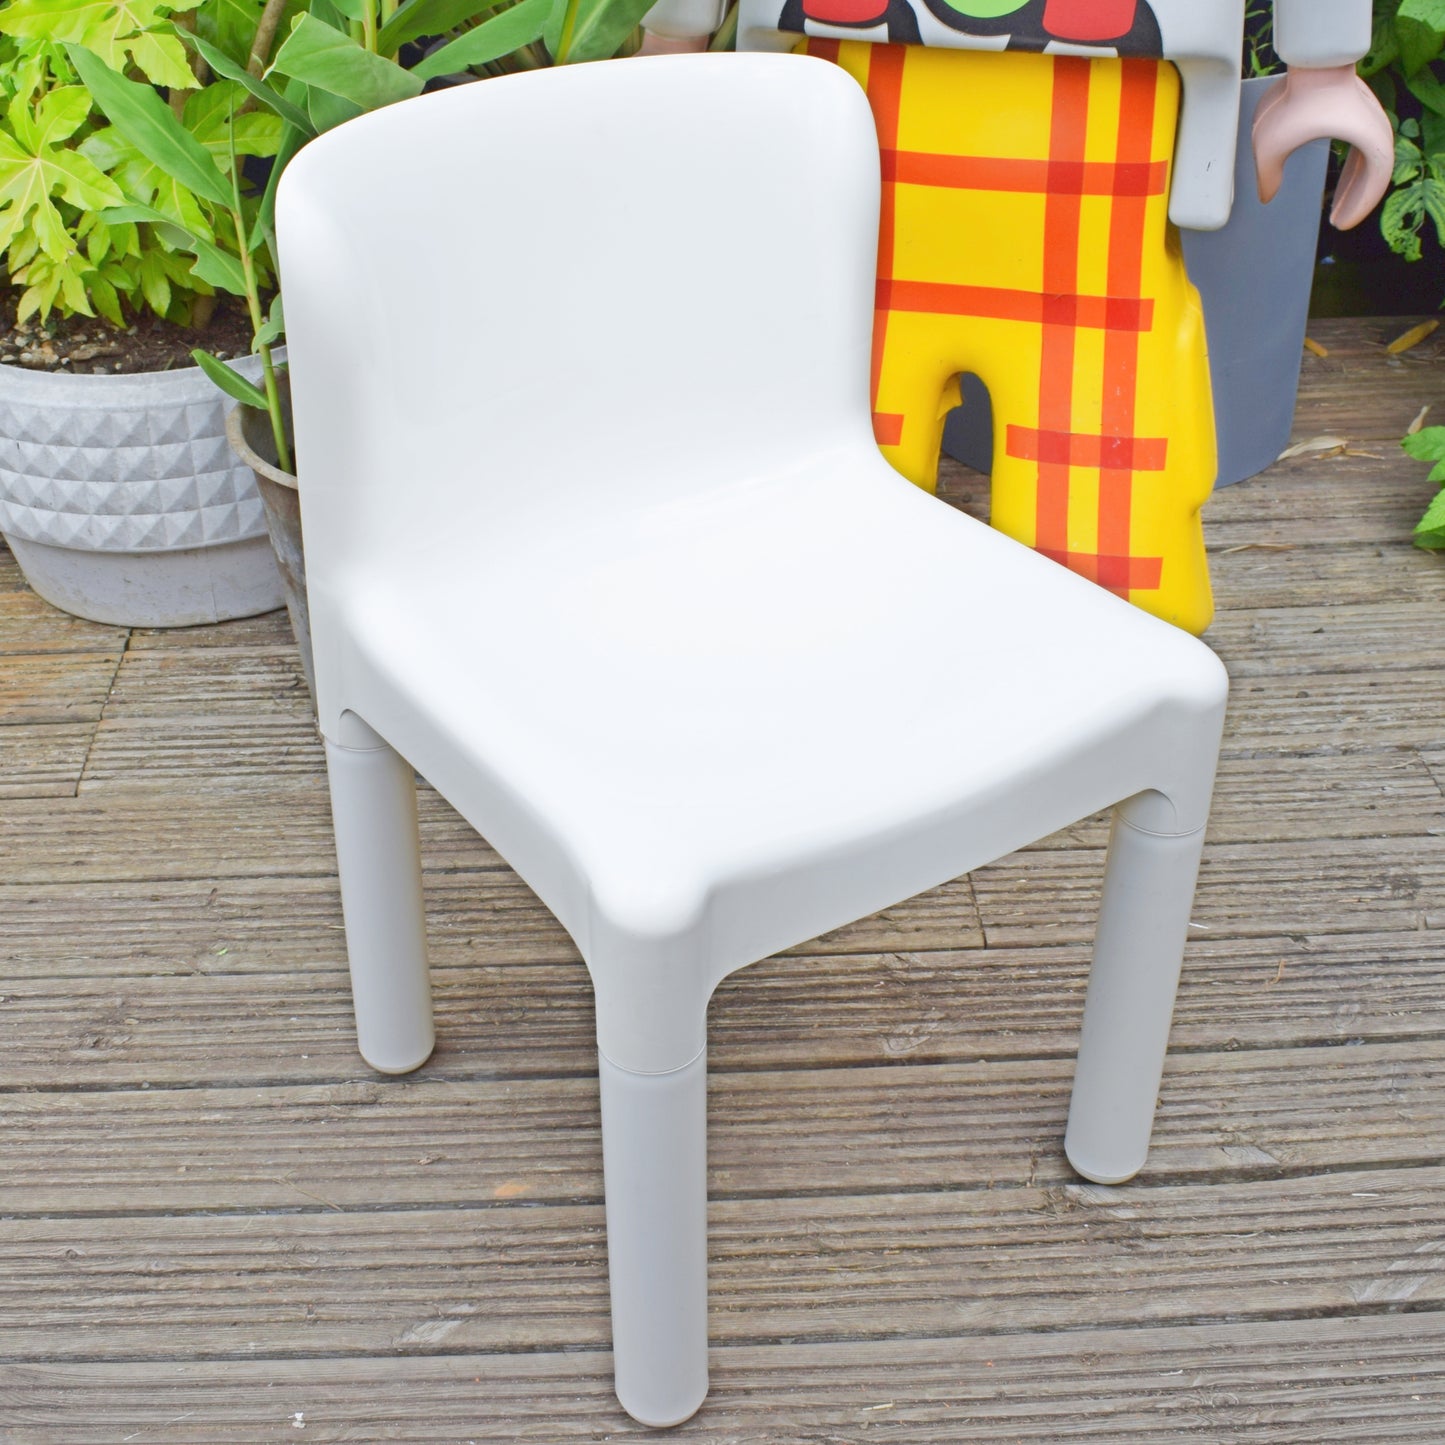 Vintage 1970s Kartell Plastic Chair - White